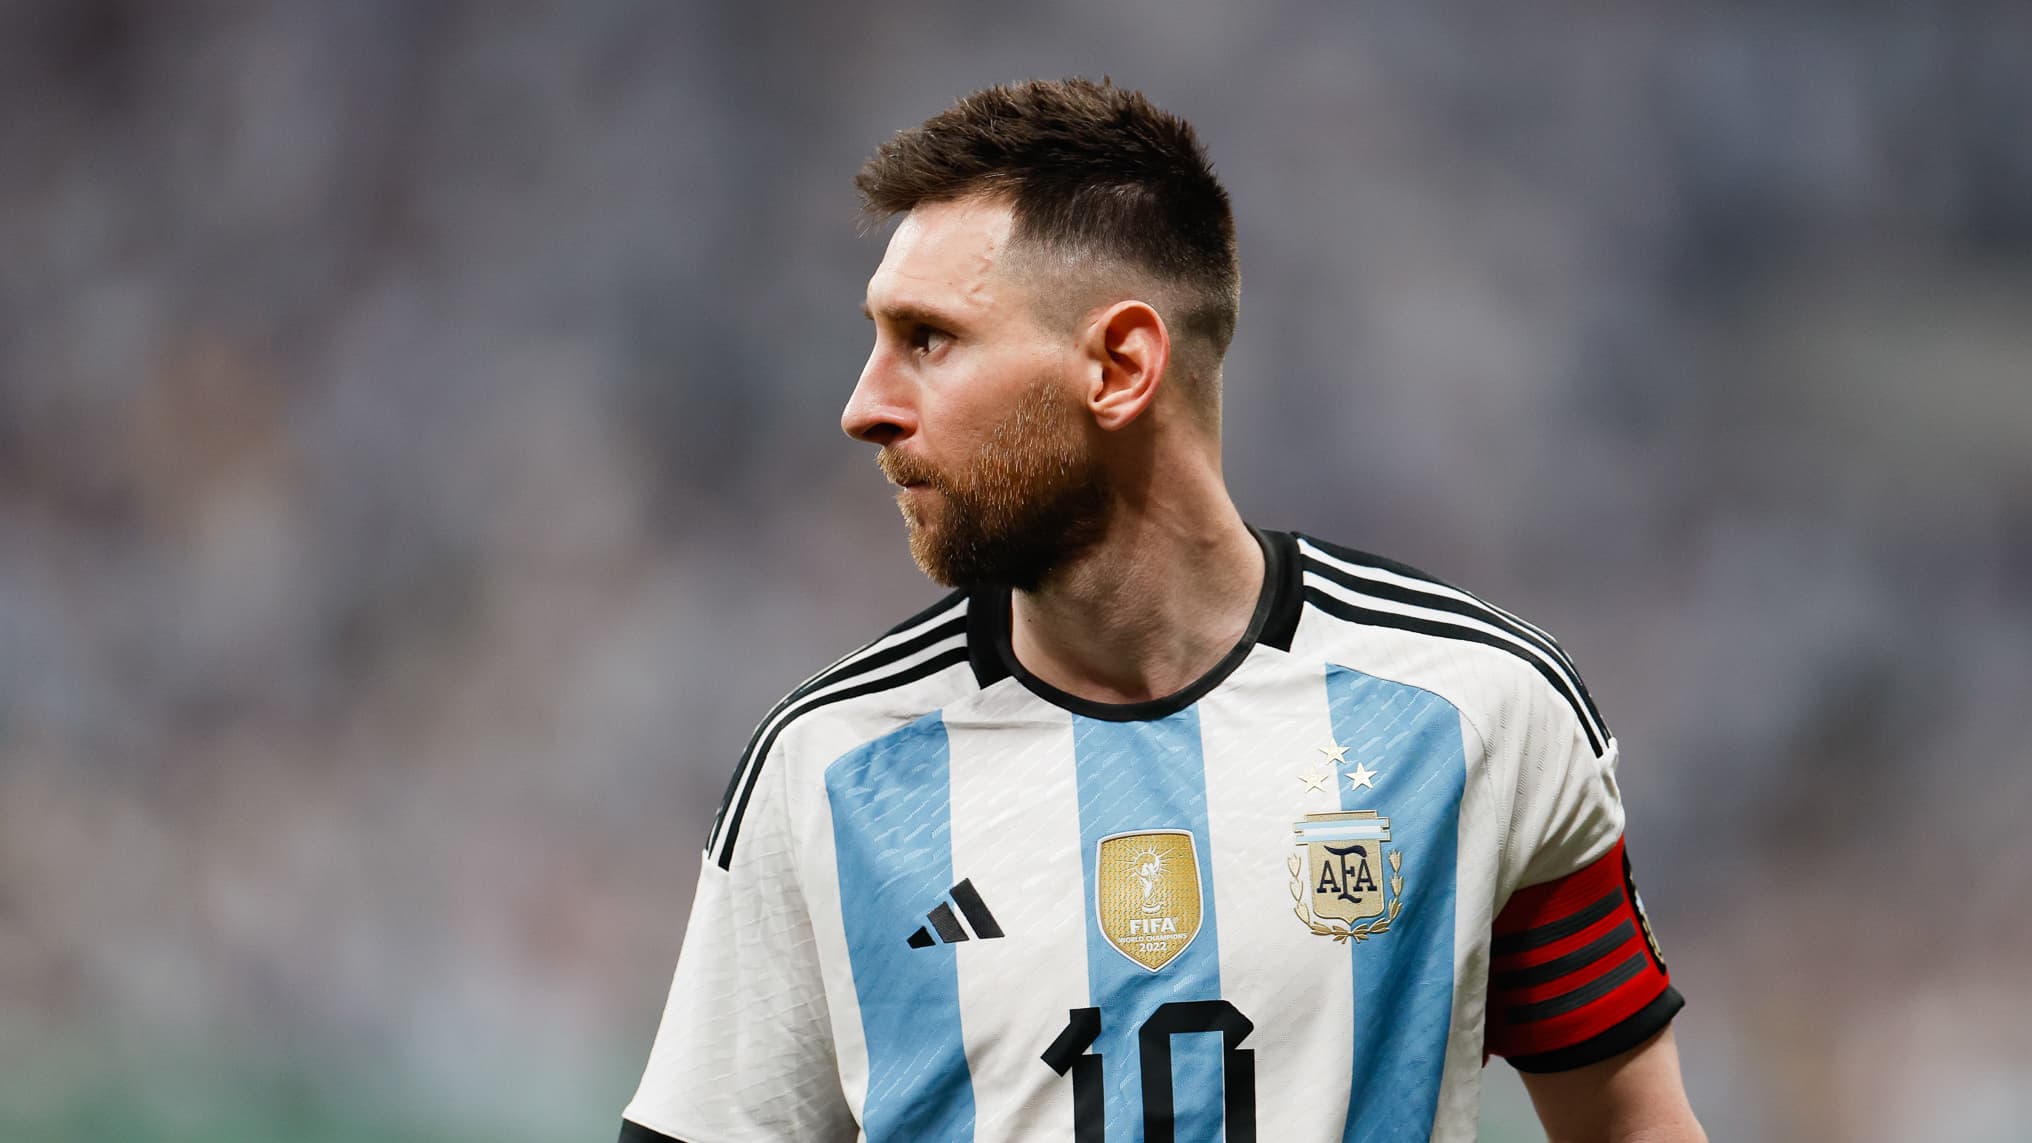 Un aficionado recorre más de 2.000 kilómetros para ver a Messi… que aún no ha llegado a Estados Unidos